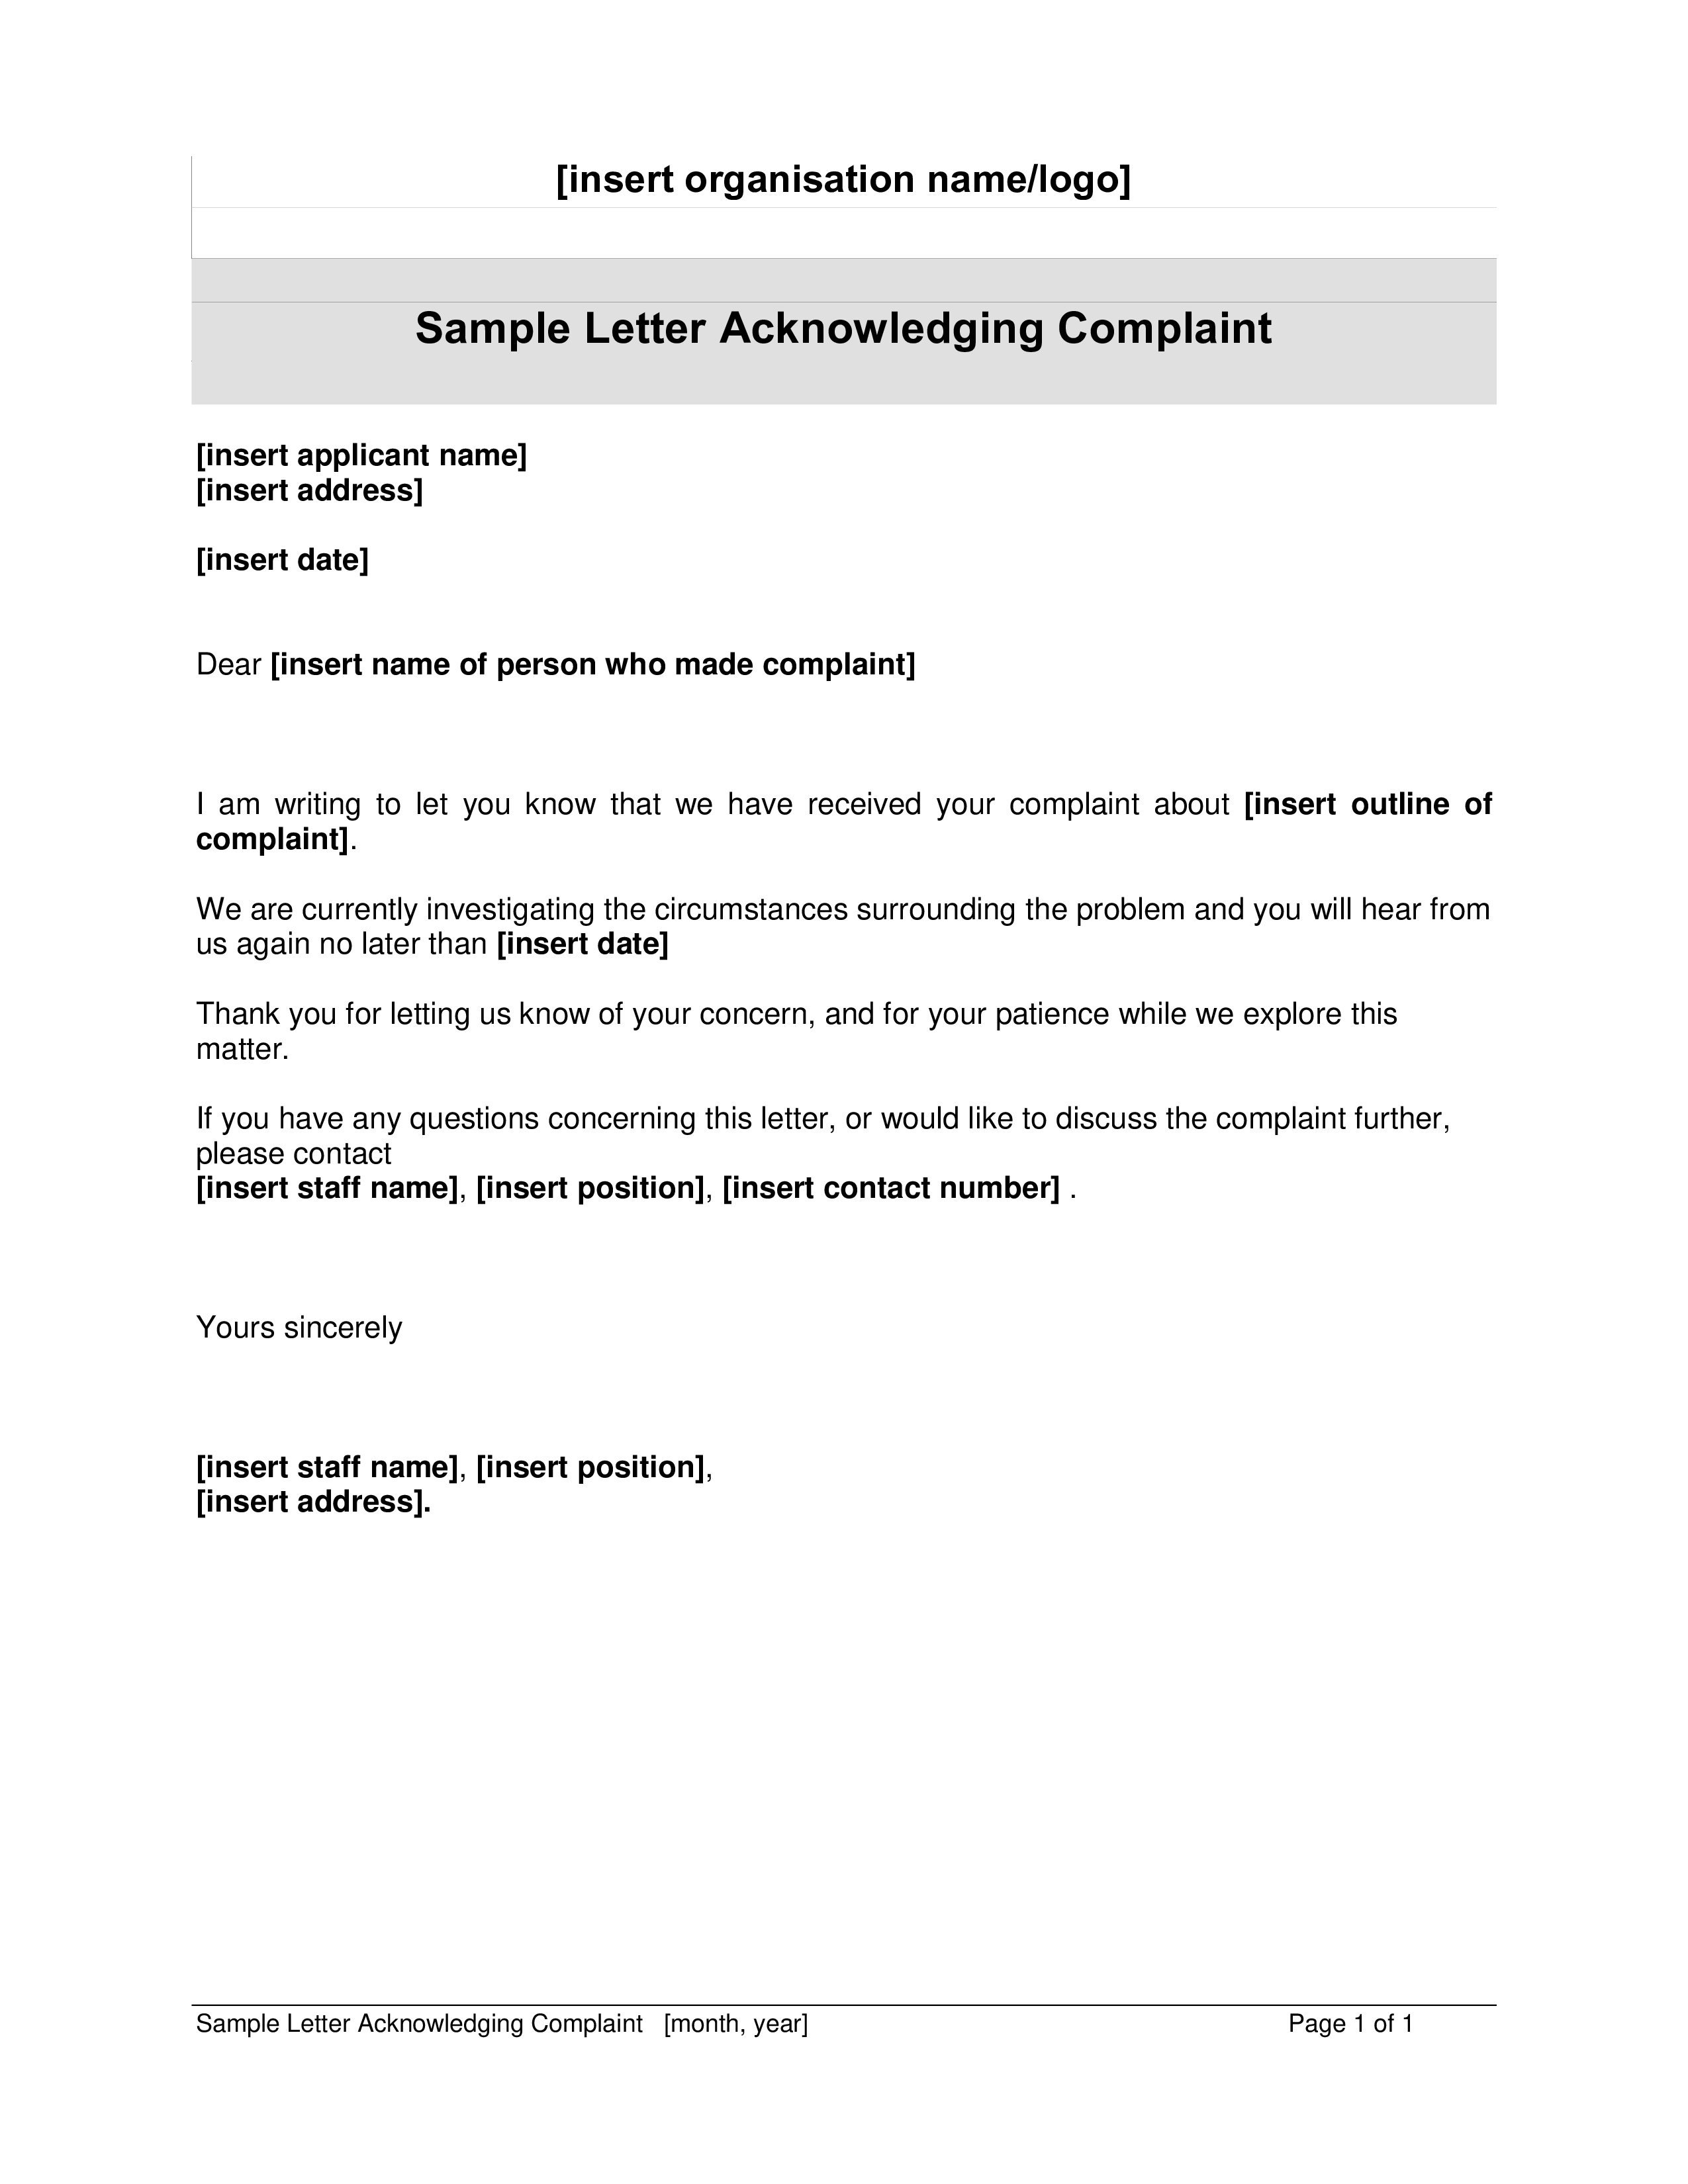 employee complaint acknowledgement letter plantilla imagen principal